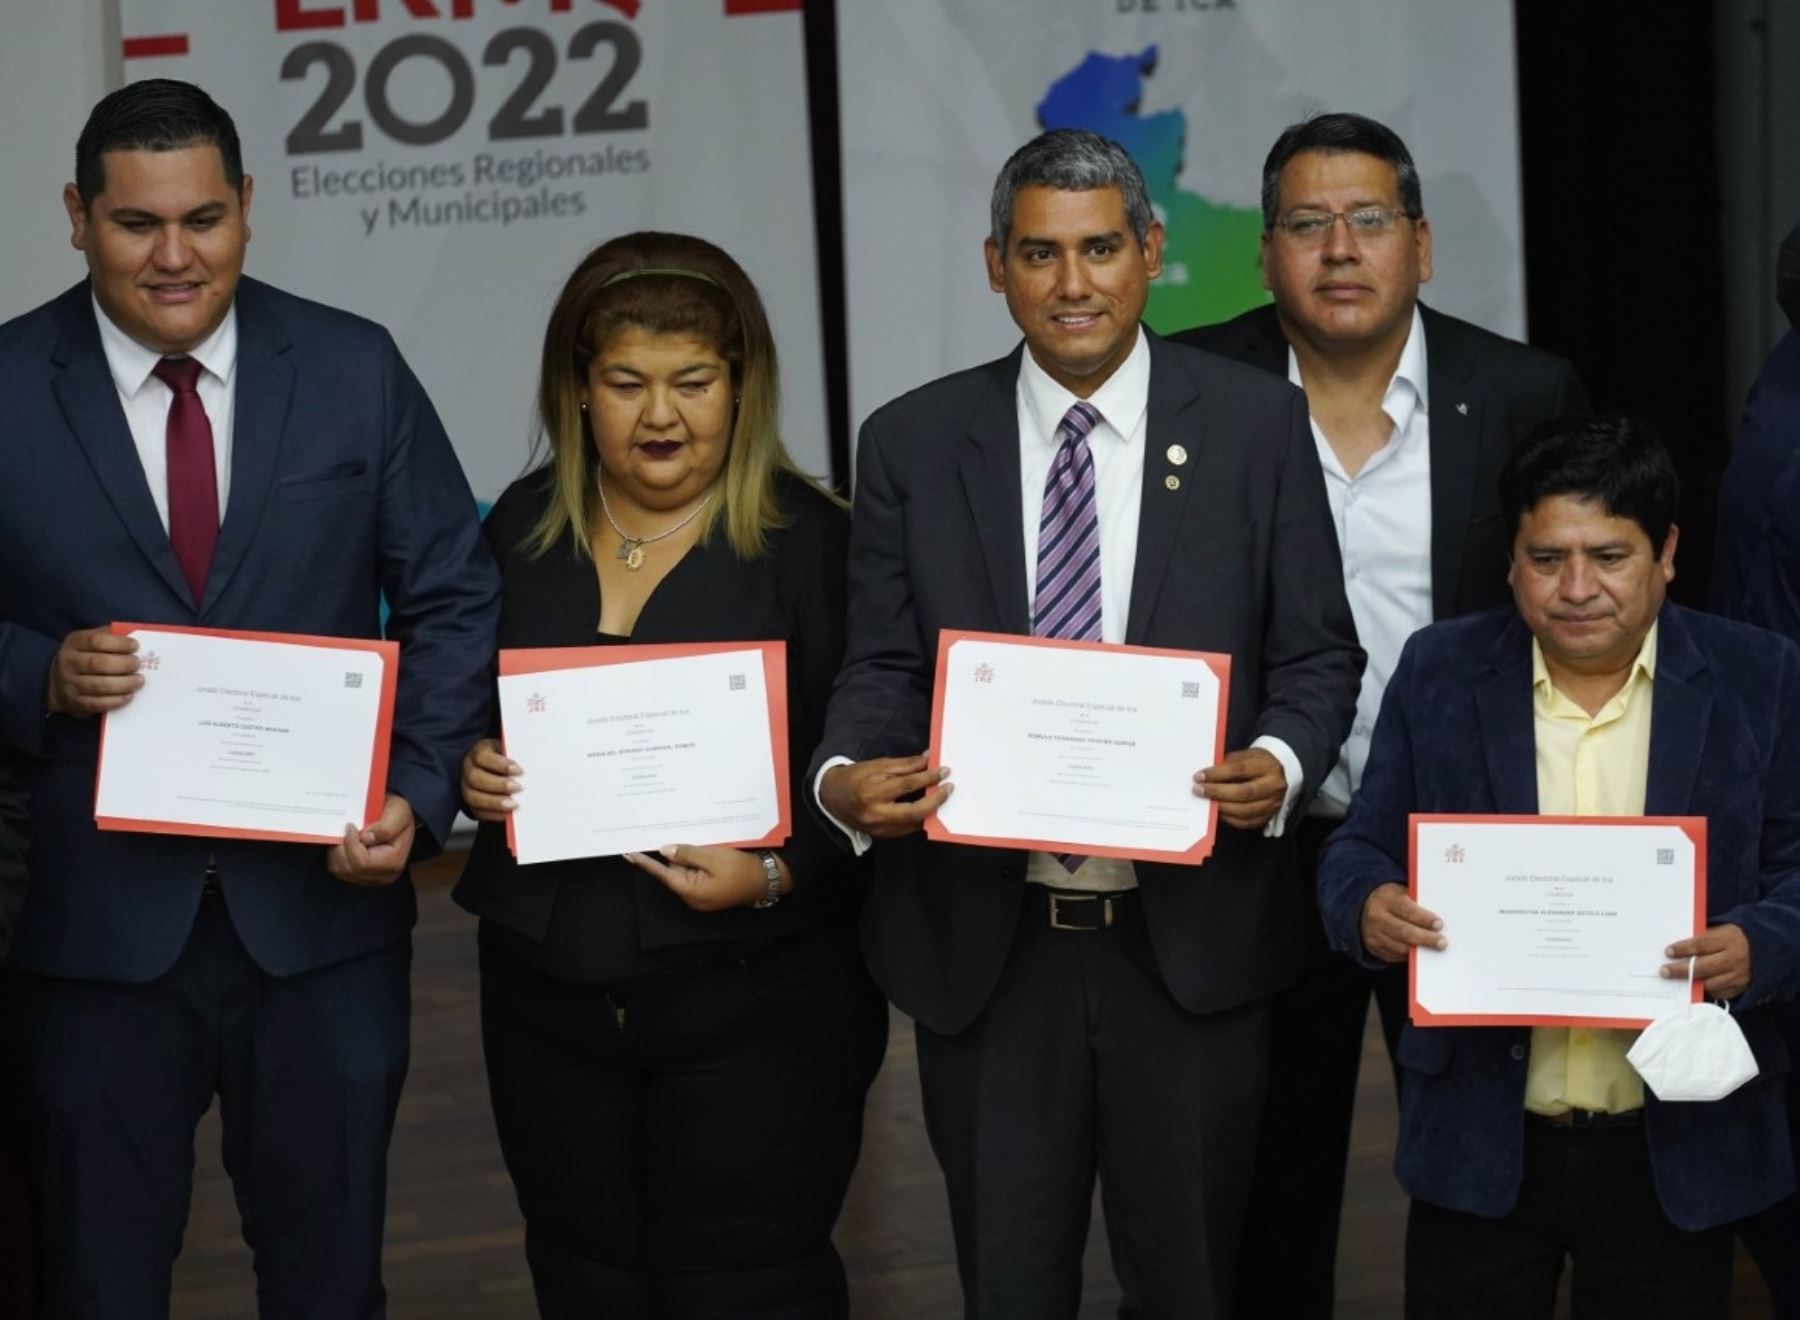 Jorge Carlos Hurtado Herrera recibió su credencial como gobernador regional de Ica junto a los nuevos consejeros regionales para el periodo 2023-2026. Foto: Genry Bautista